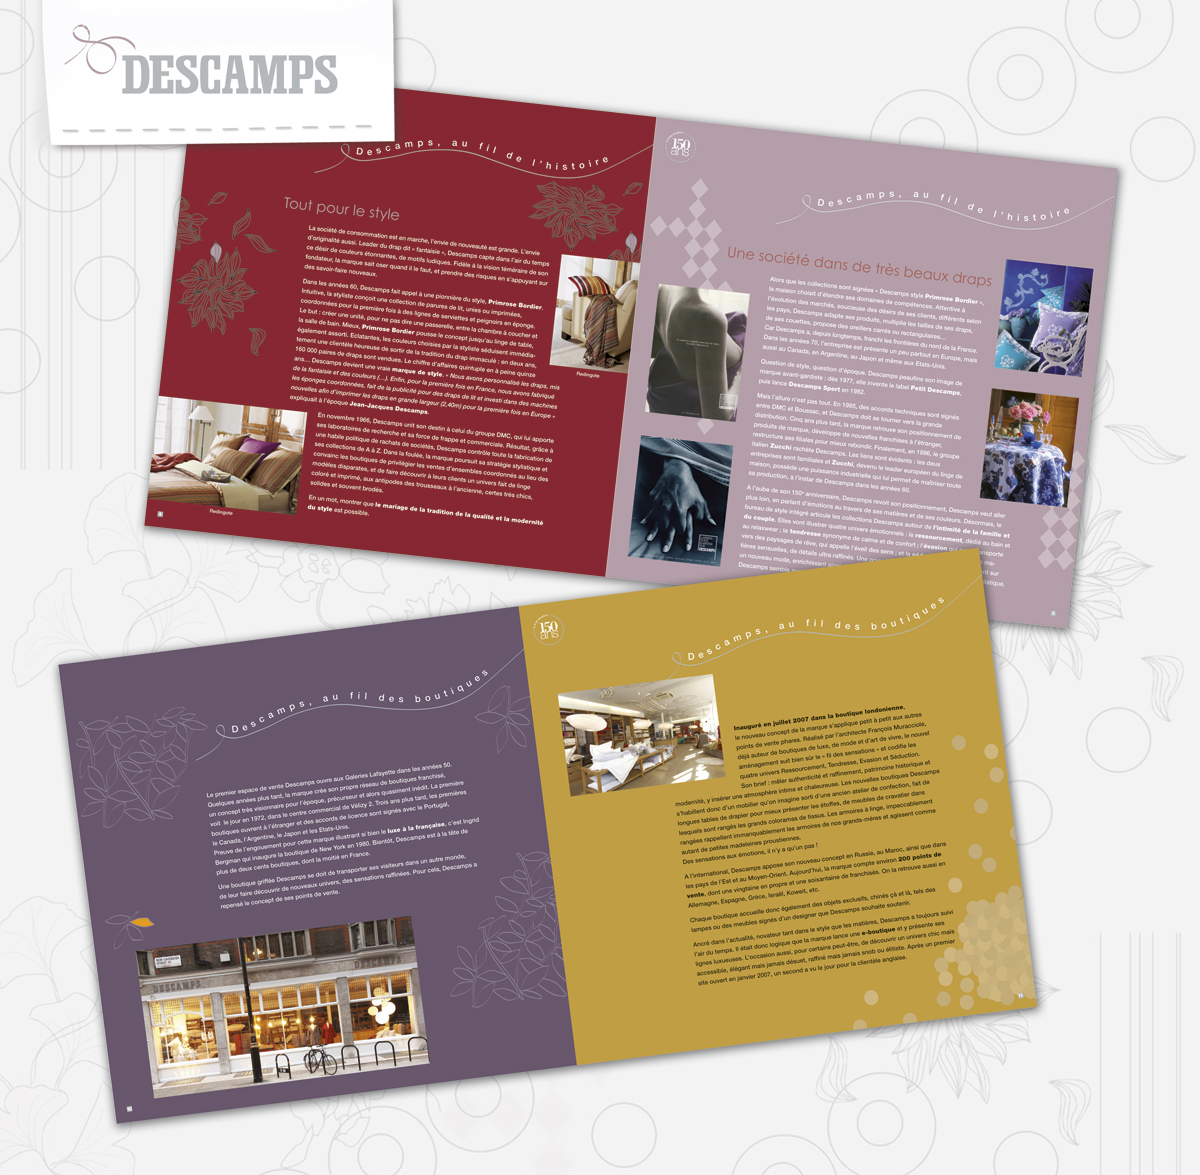 Conception graphique d’une brochure corporate pour célébrer les 150 ans de la marque Descamps.